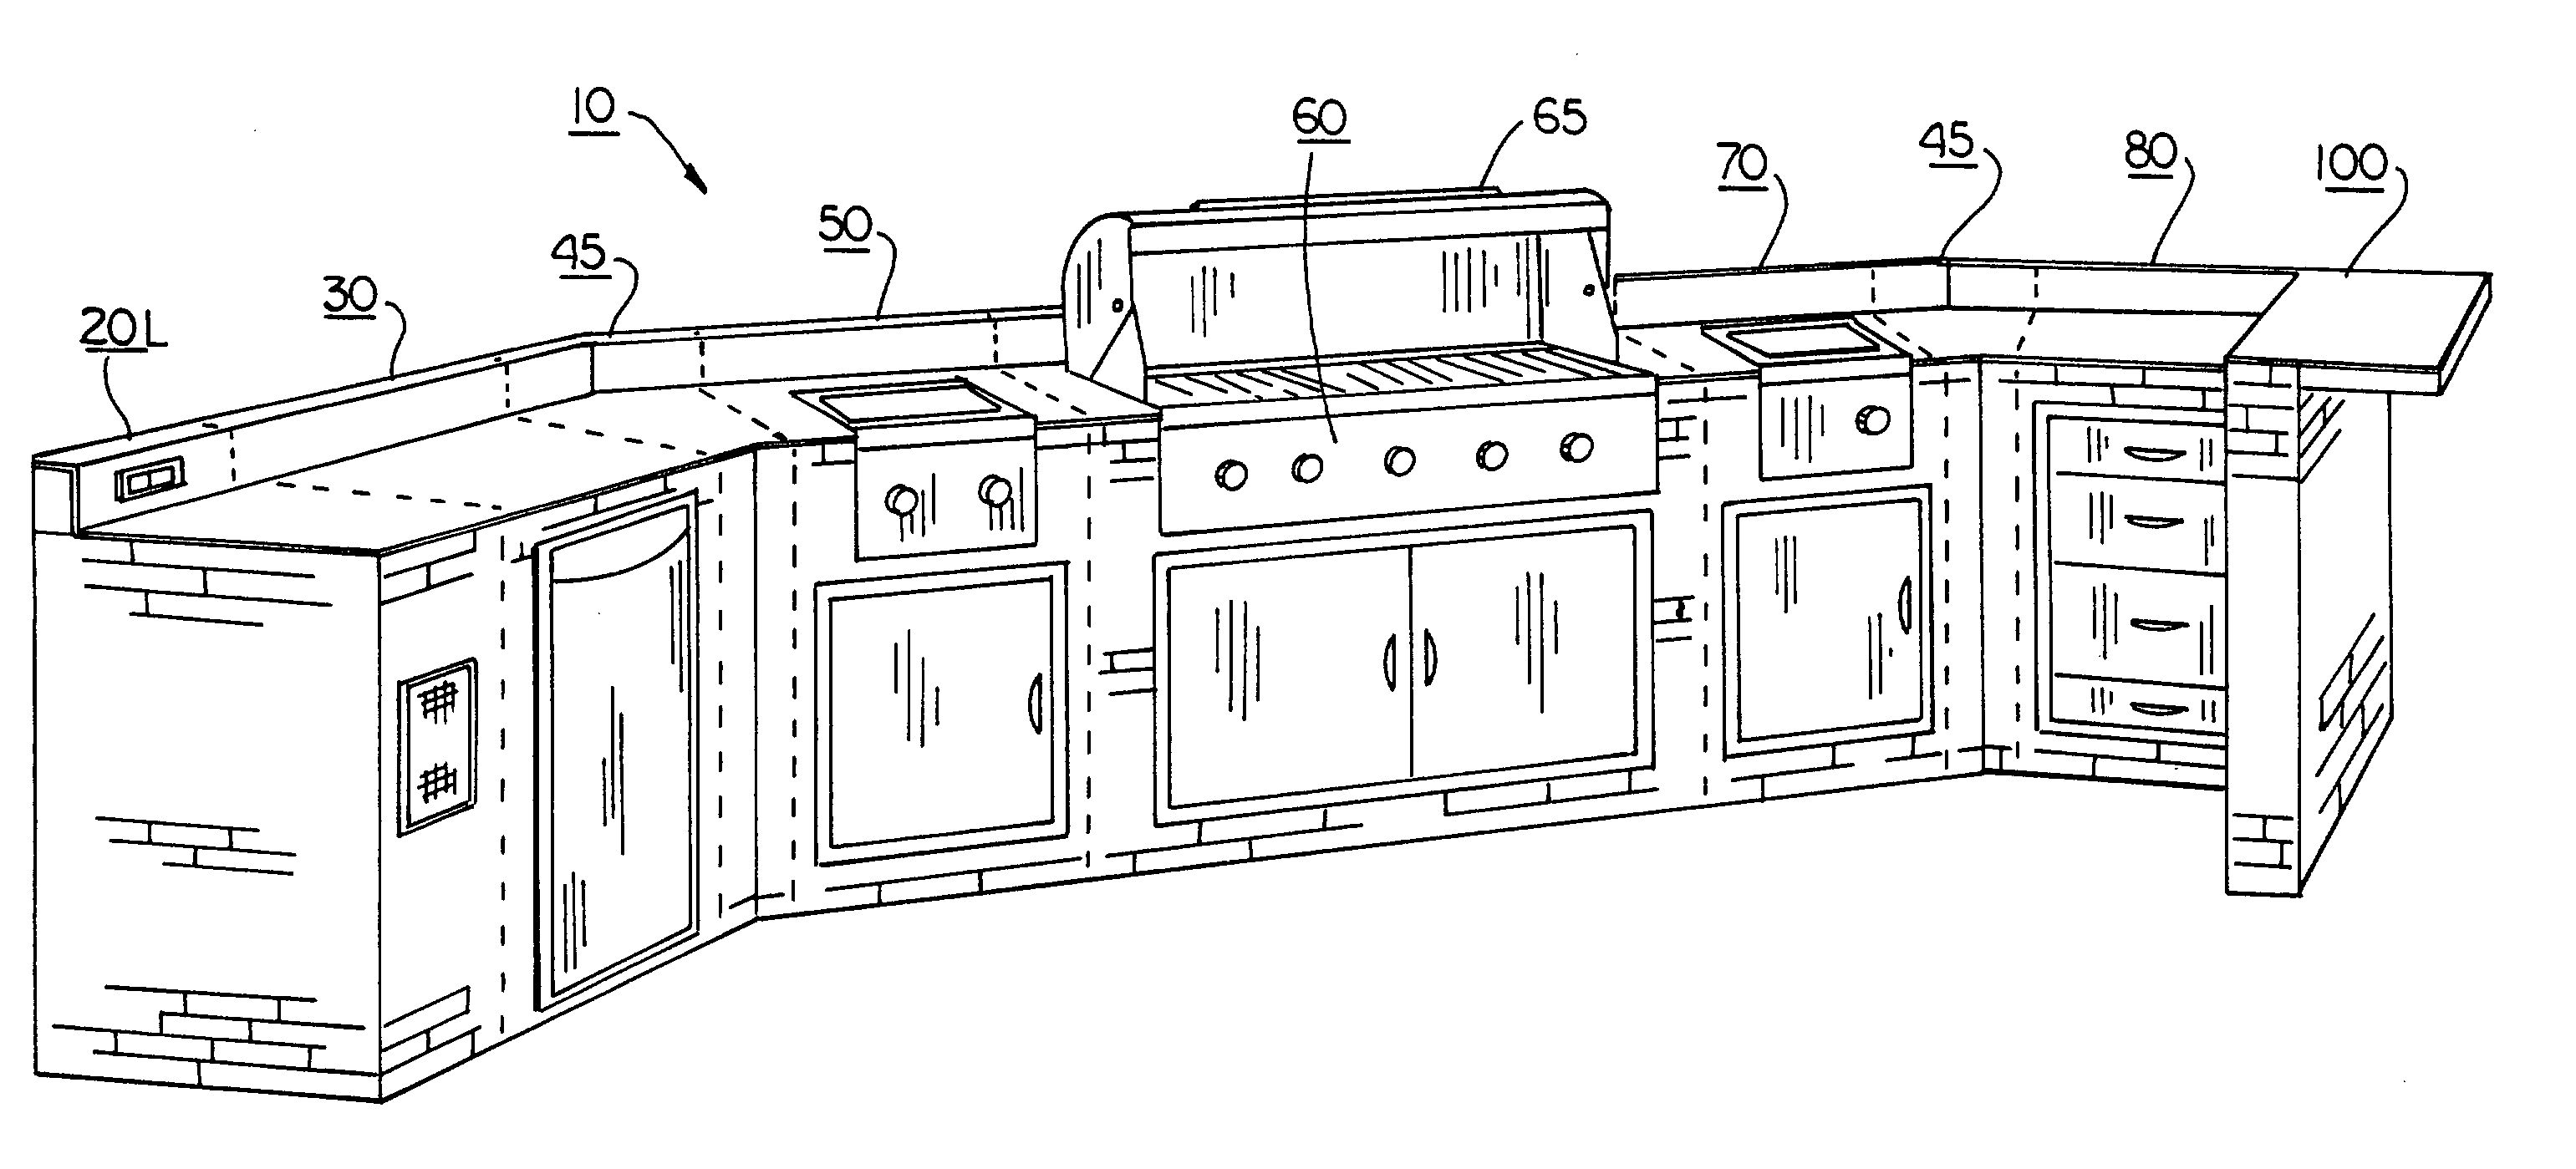 Modular outdoor kitchen